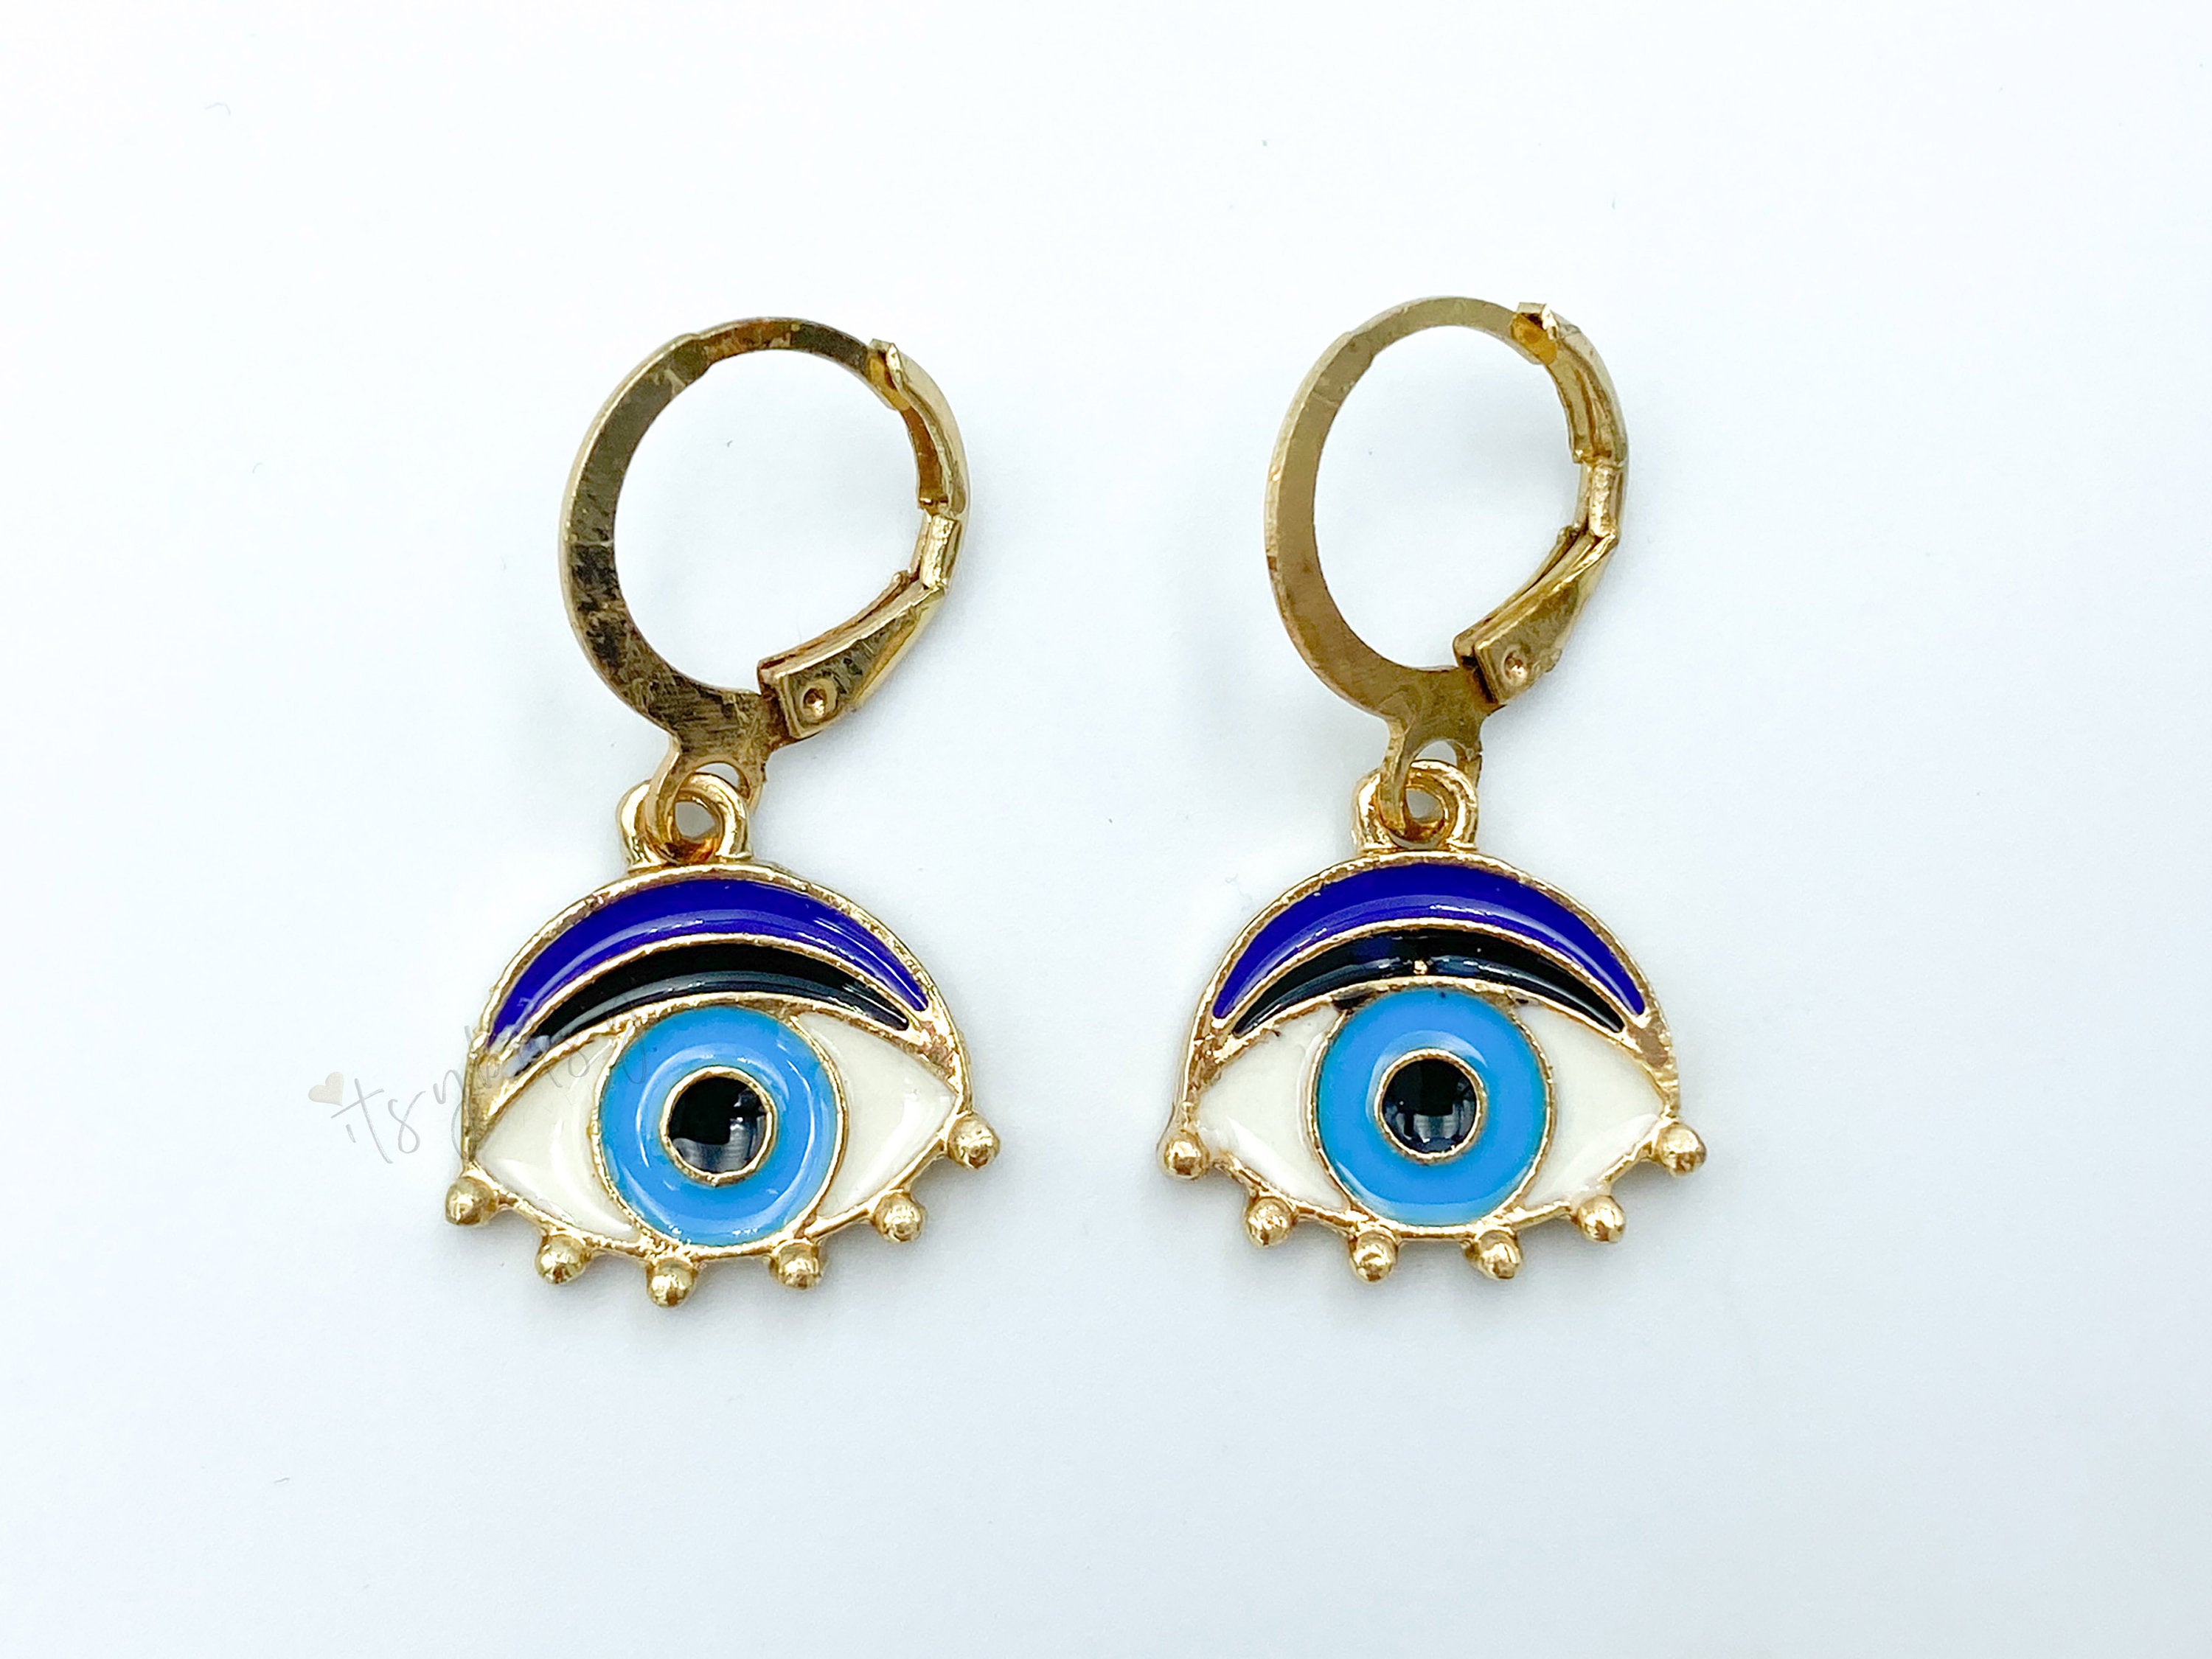 1 pair, 31mm x 15mm , Hoop Earrings Gold Plated Blue & Black Evil Eye